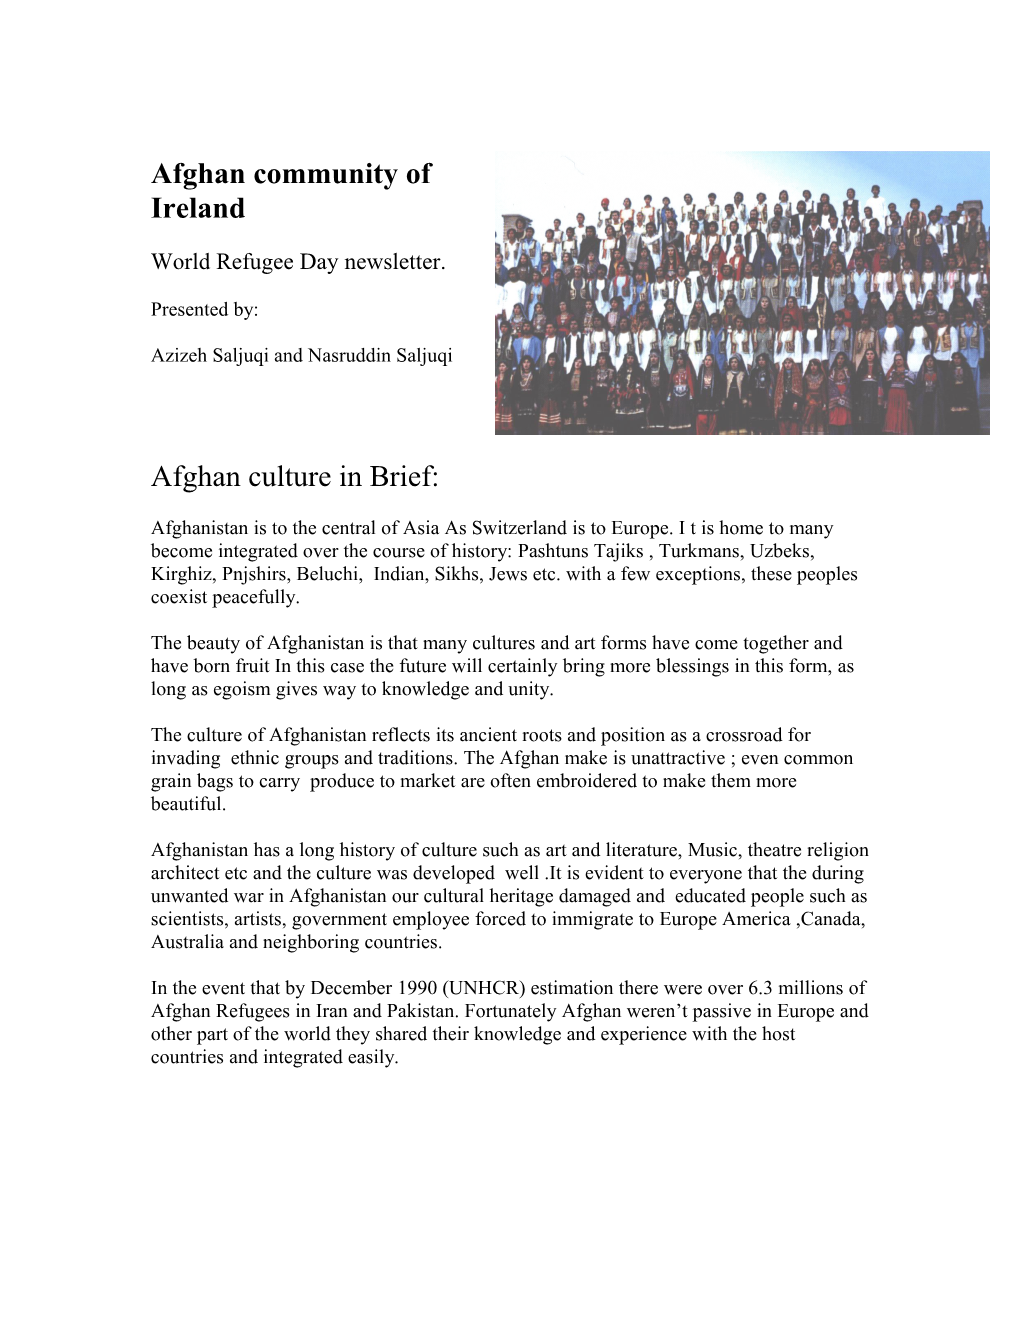 Afghan Culture in Breif